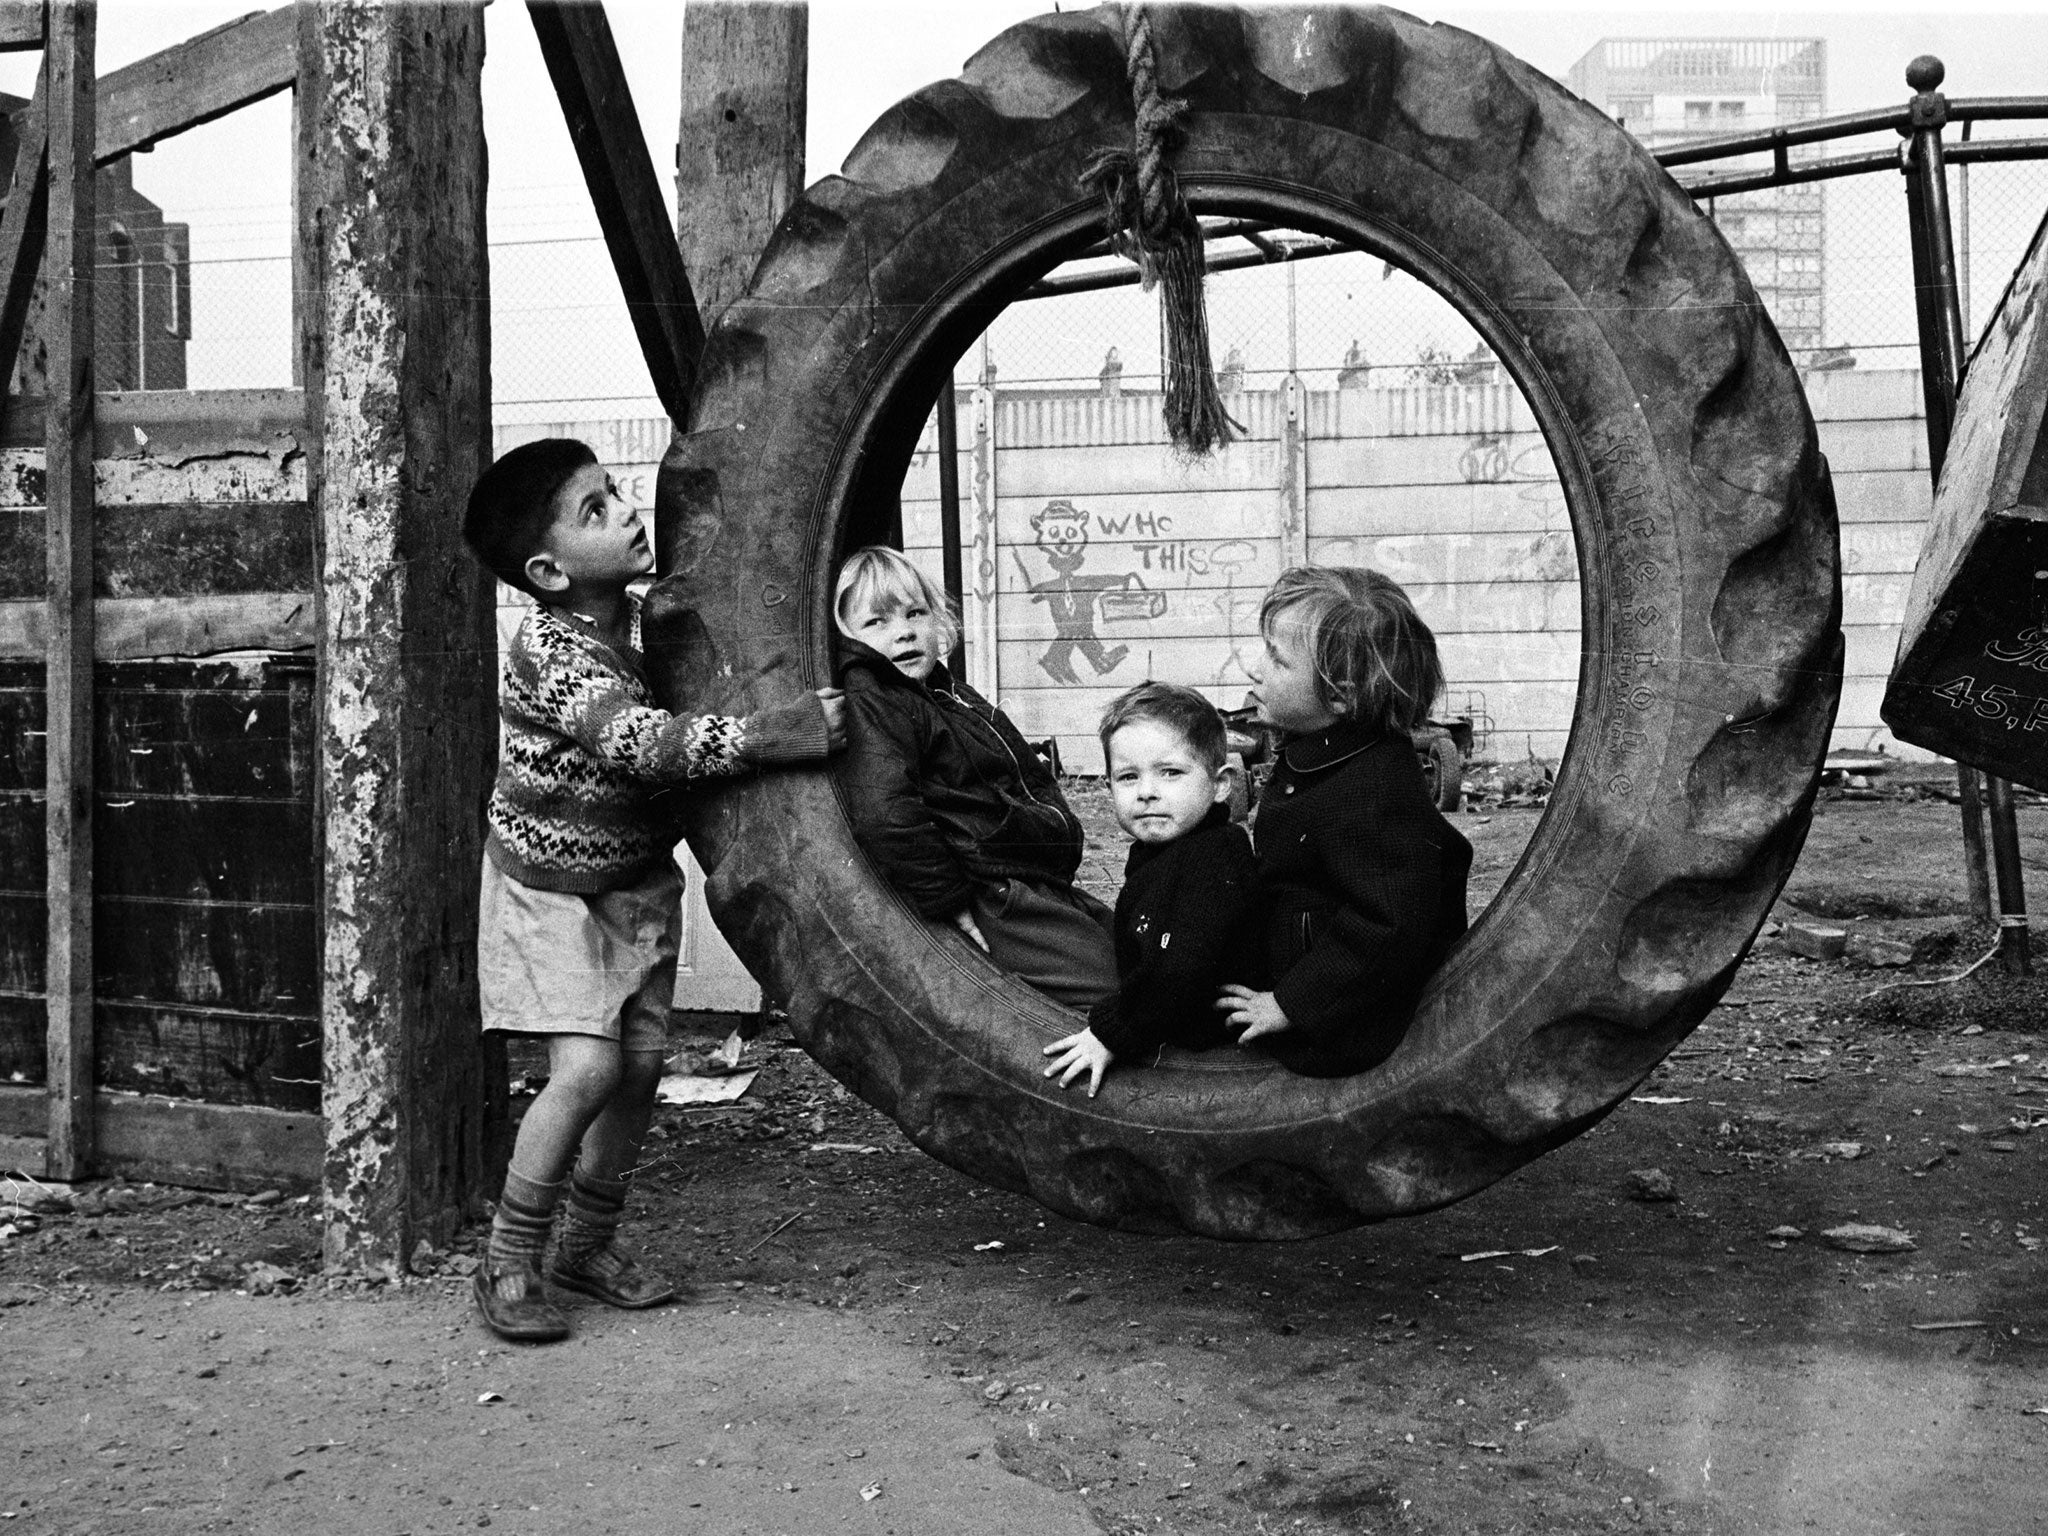 Children at an adventure playground in 1965